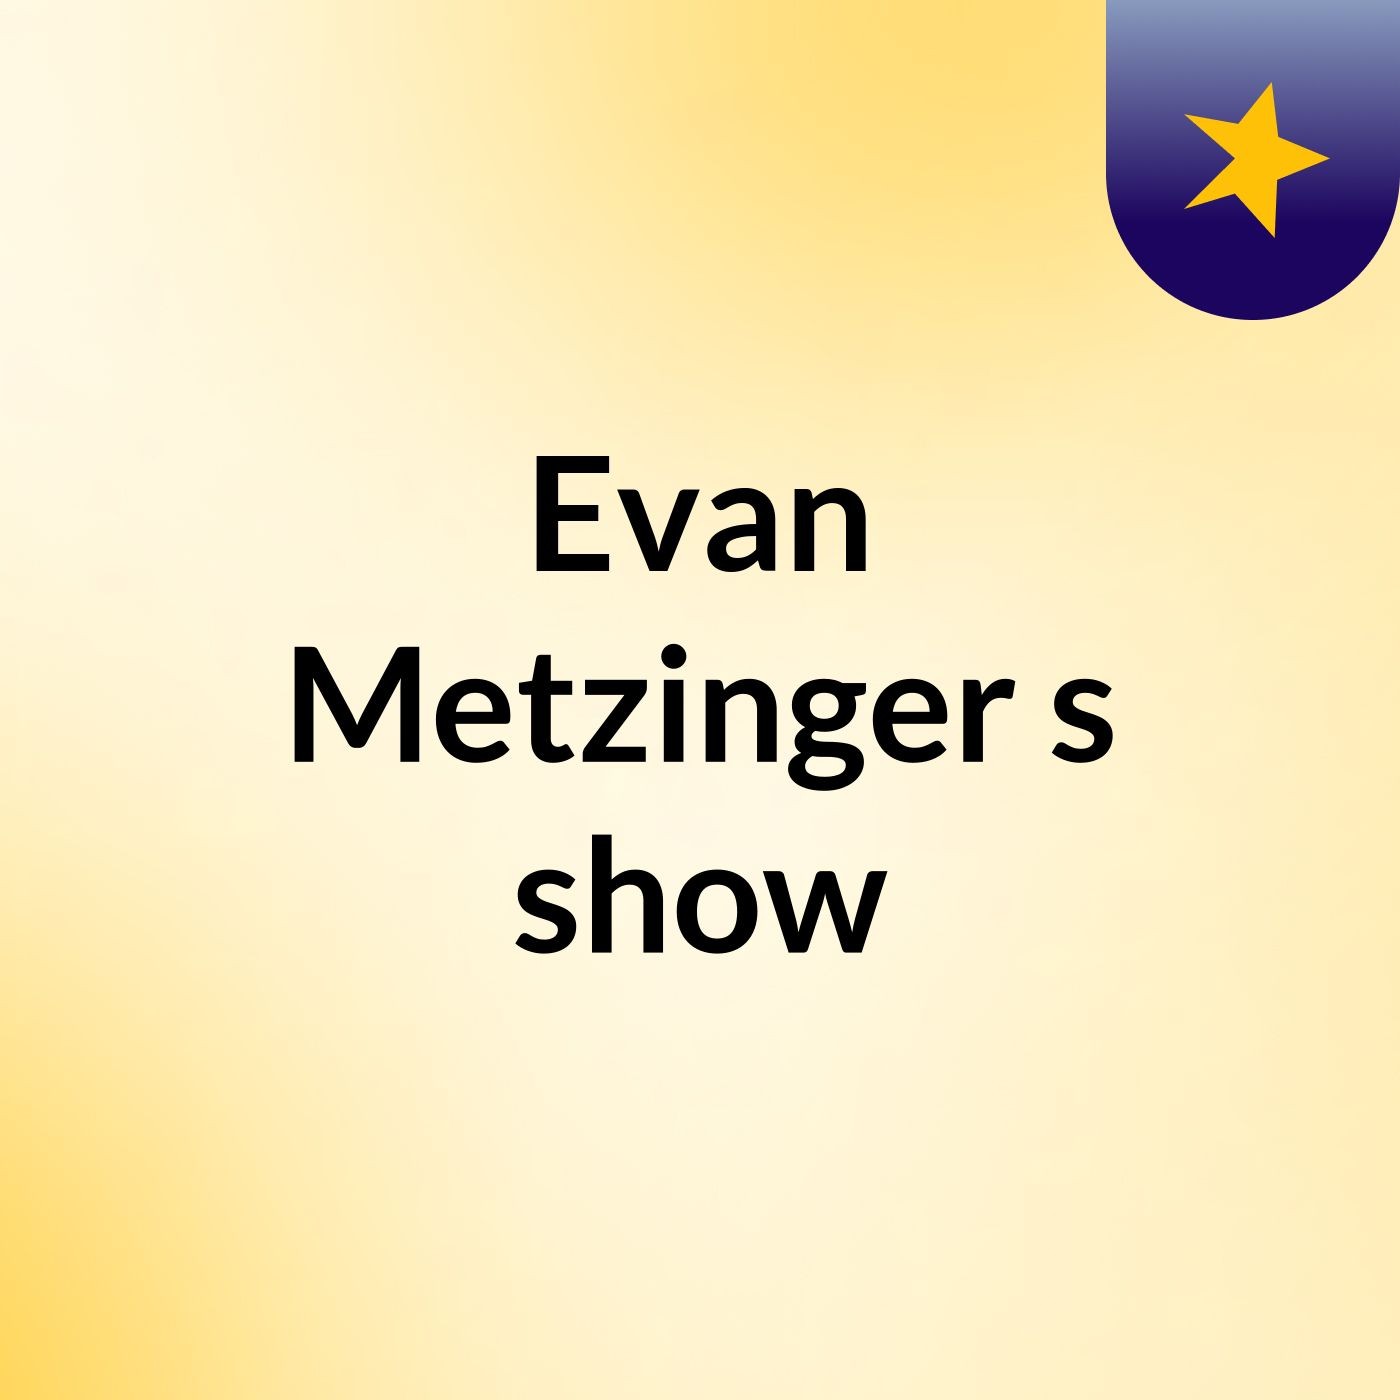 Evan Metzinger's show